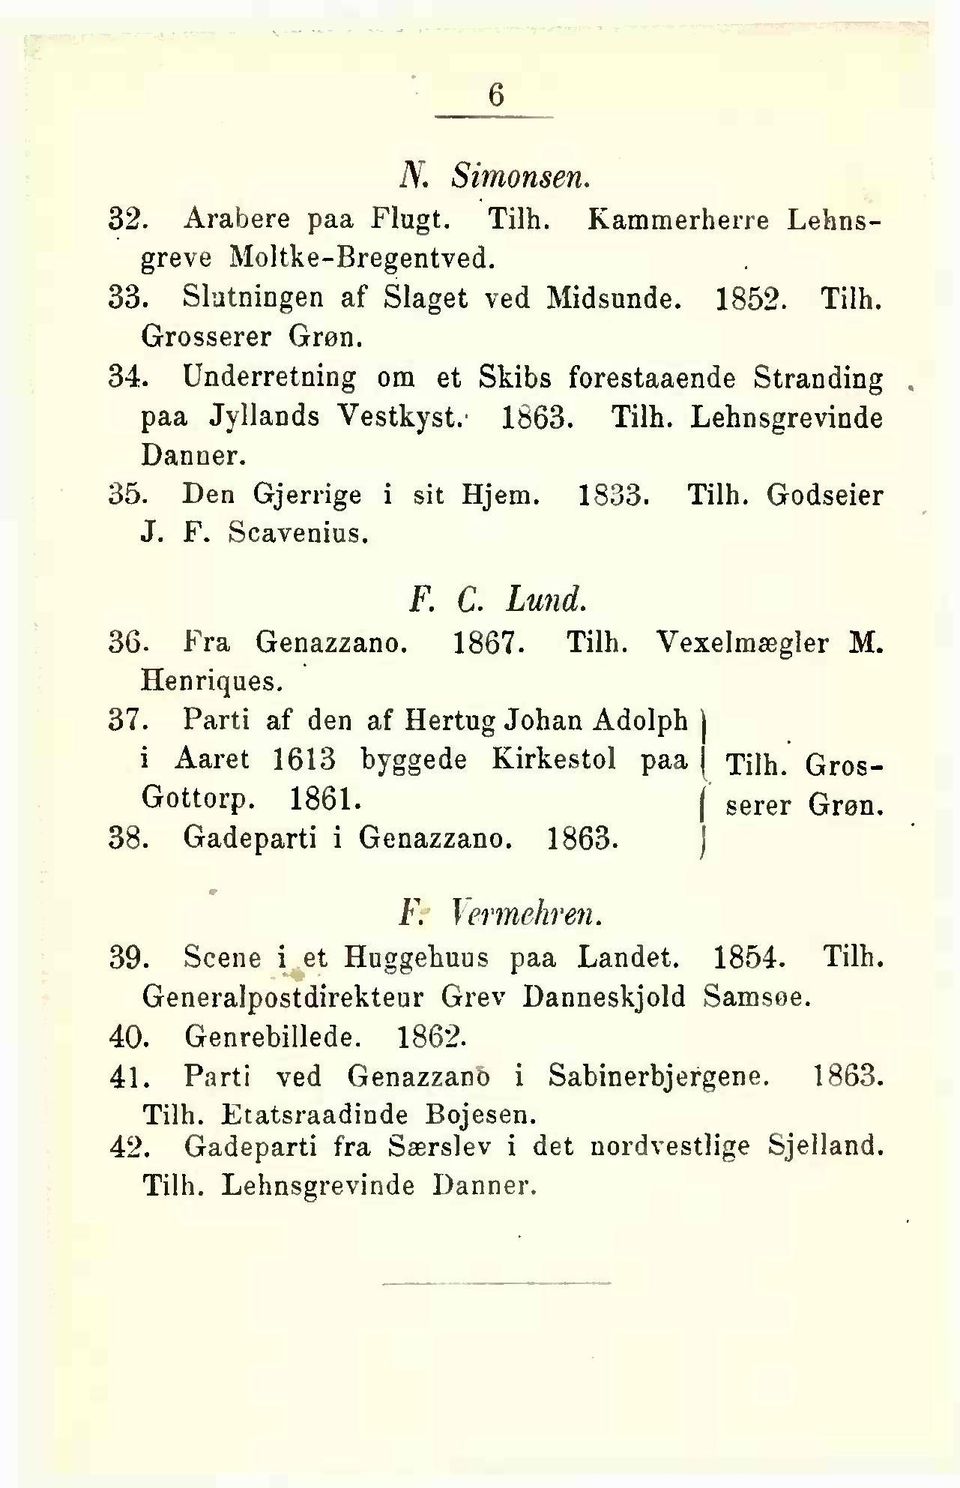 Fra Genazzano. 1867. Tilh. Vexelmægler M. Henriques. 37. Parti af den af Hertug Johan Adolph i Aaret 1613 byggede Kirkestol paa j Tilh. Gros- Gottorp. 1861. I serer Grøn. 38. Gadeparti i Genazzano.